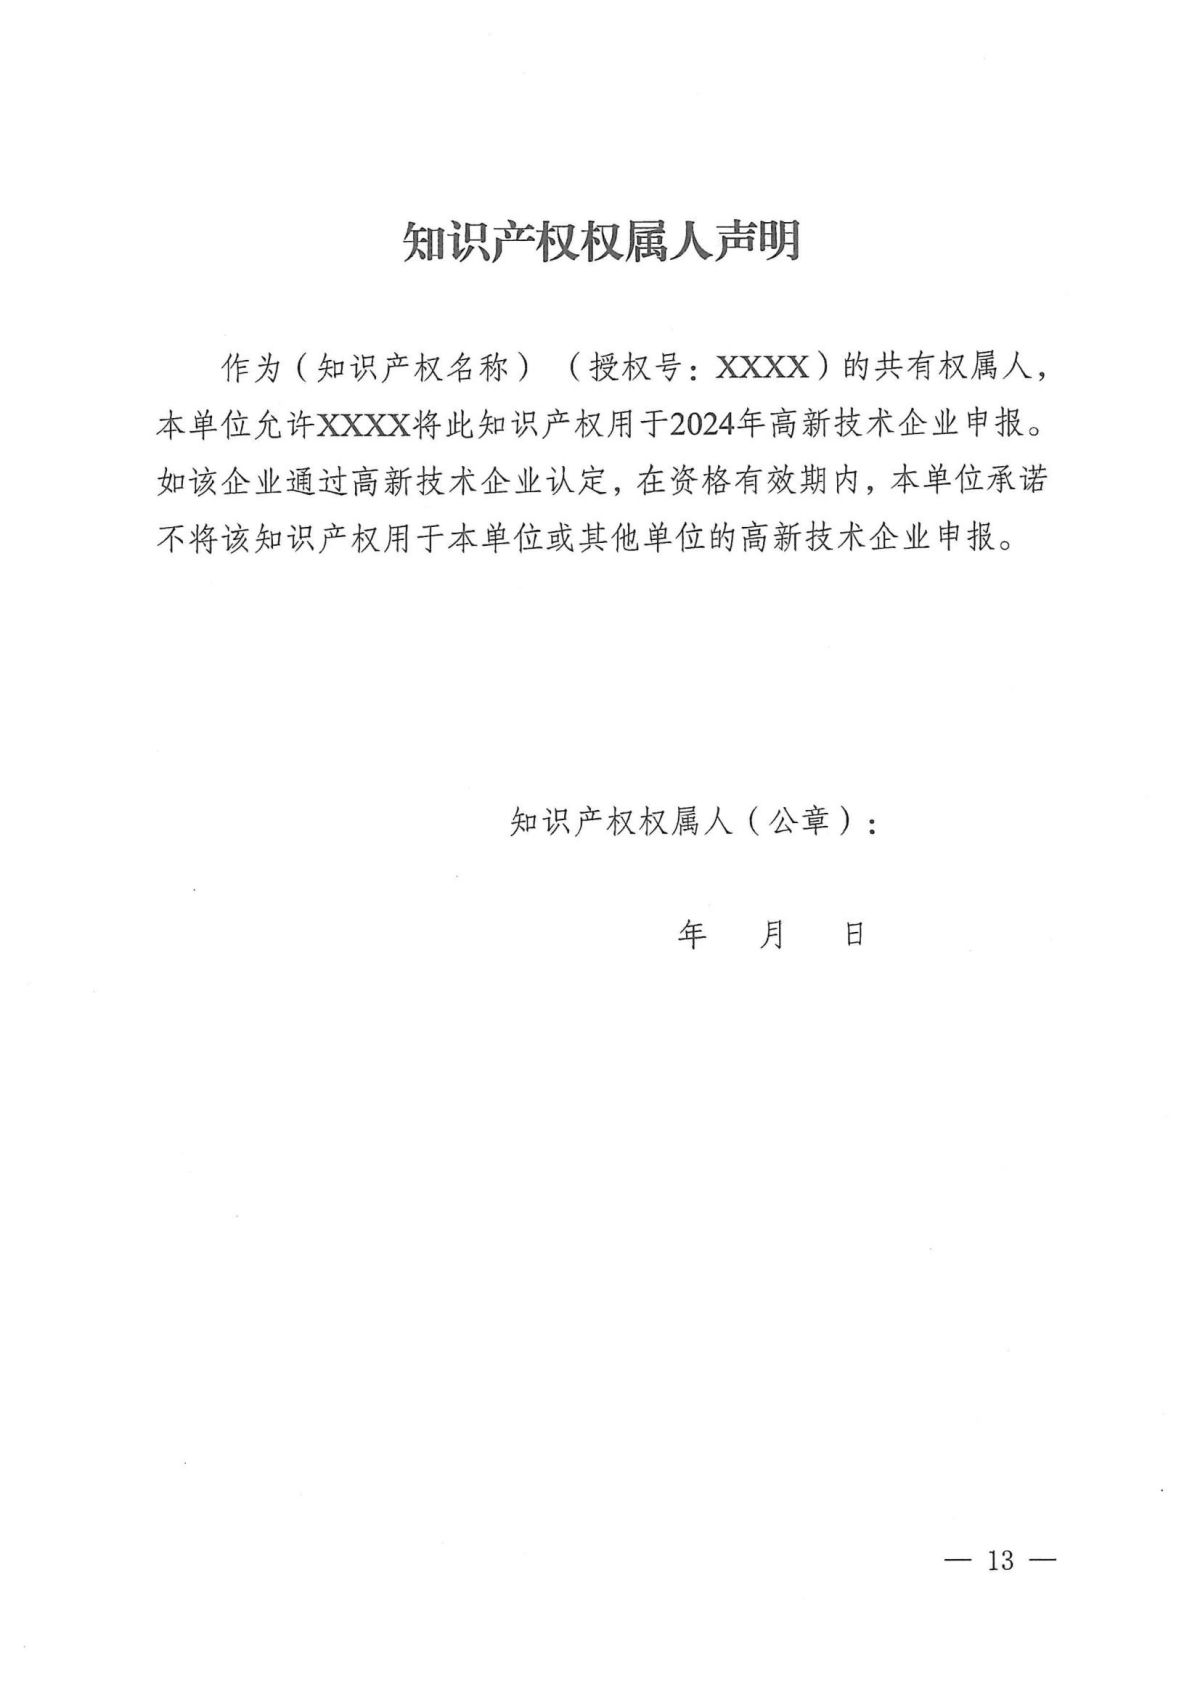 附件1：关于云南省2024年高新技术企业培育认定工作有关事项的通知_12.jpg